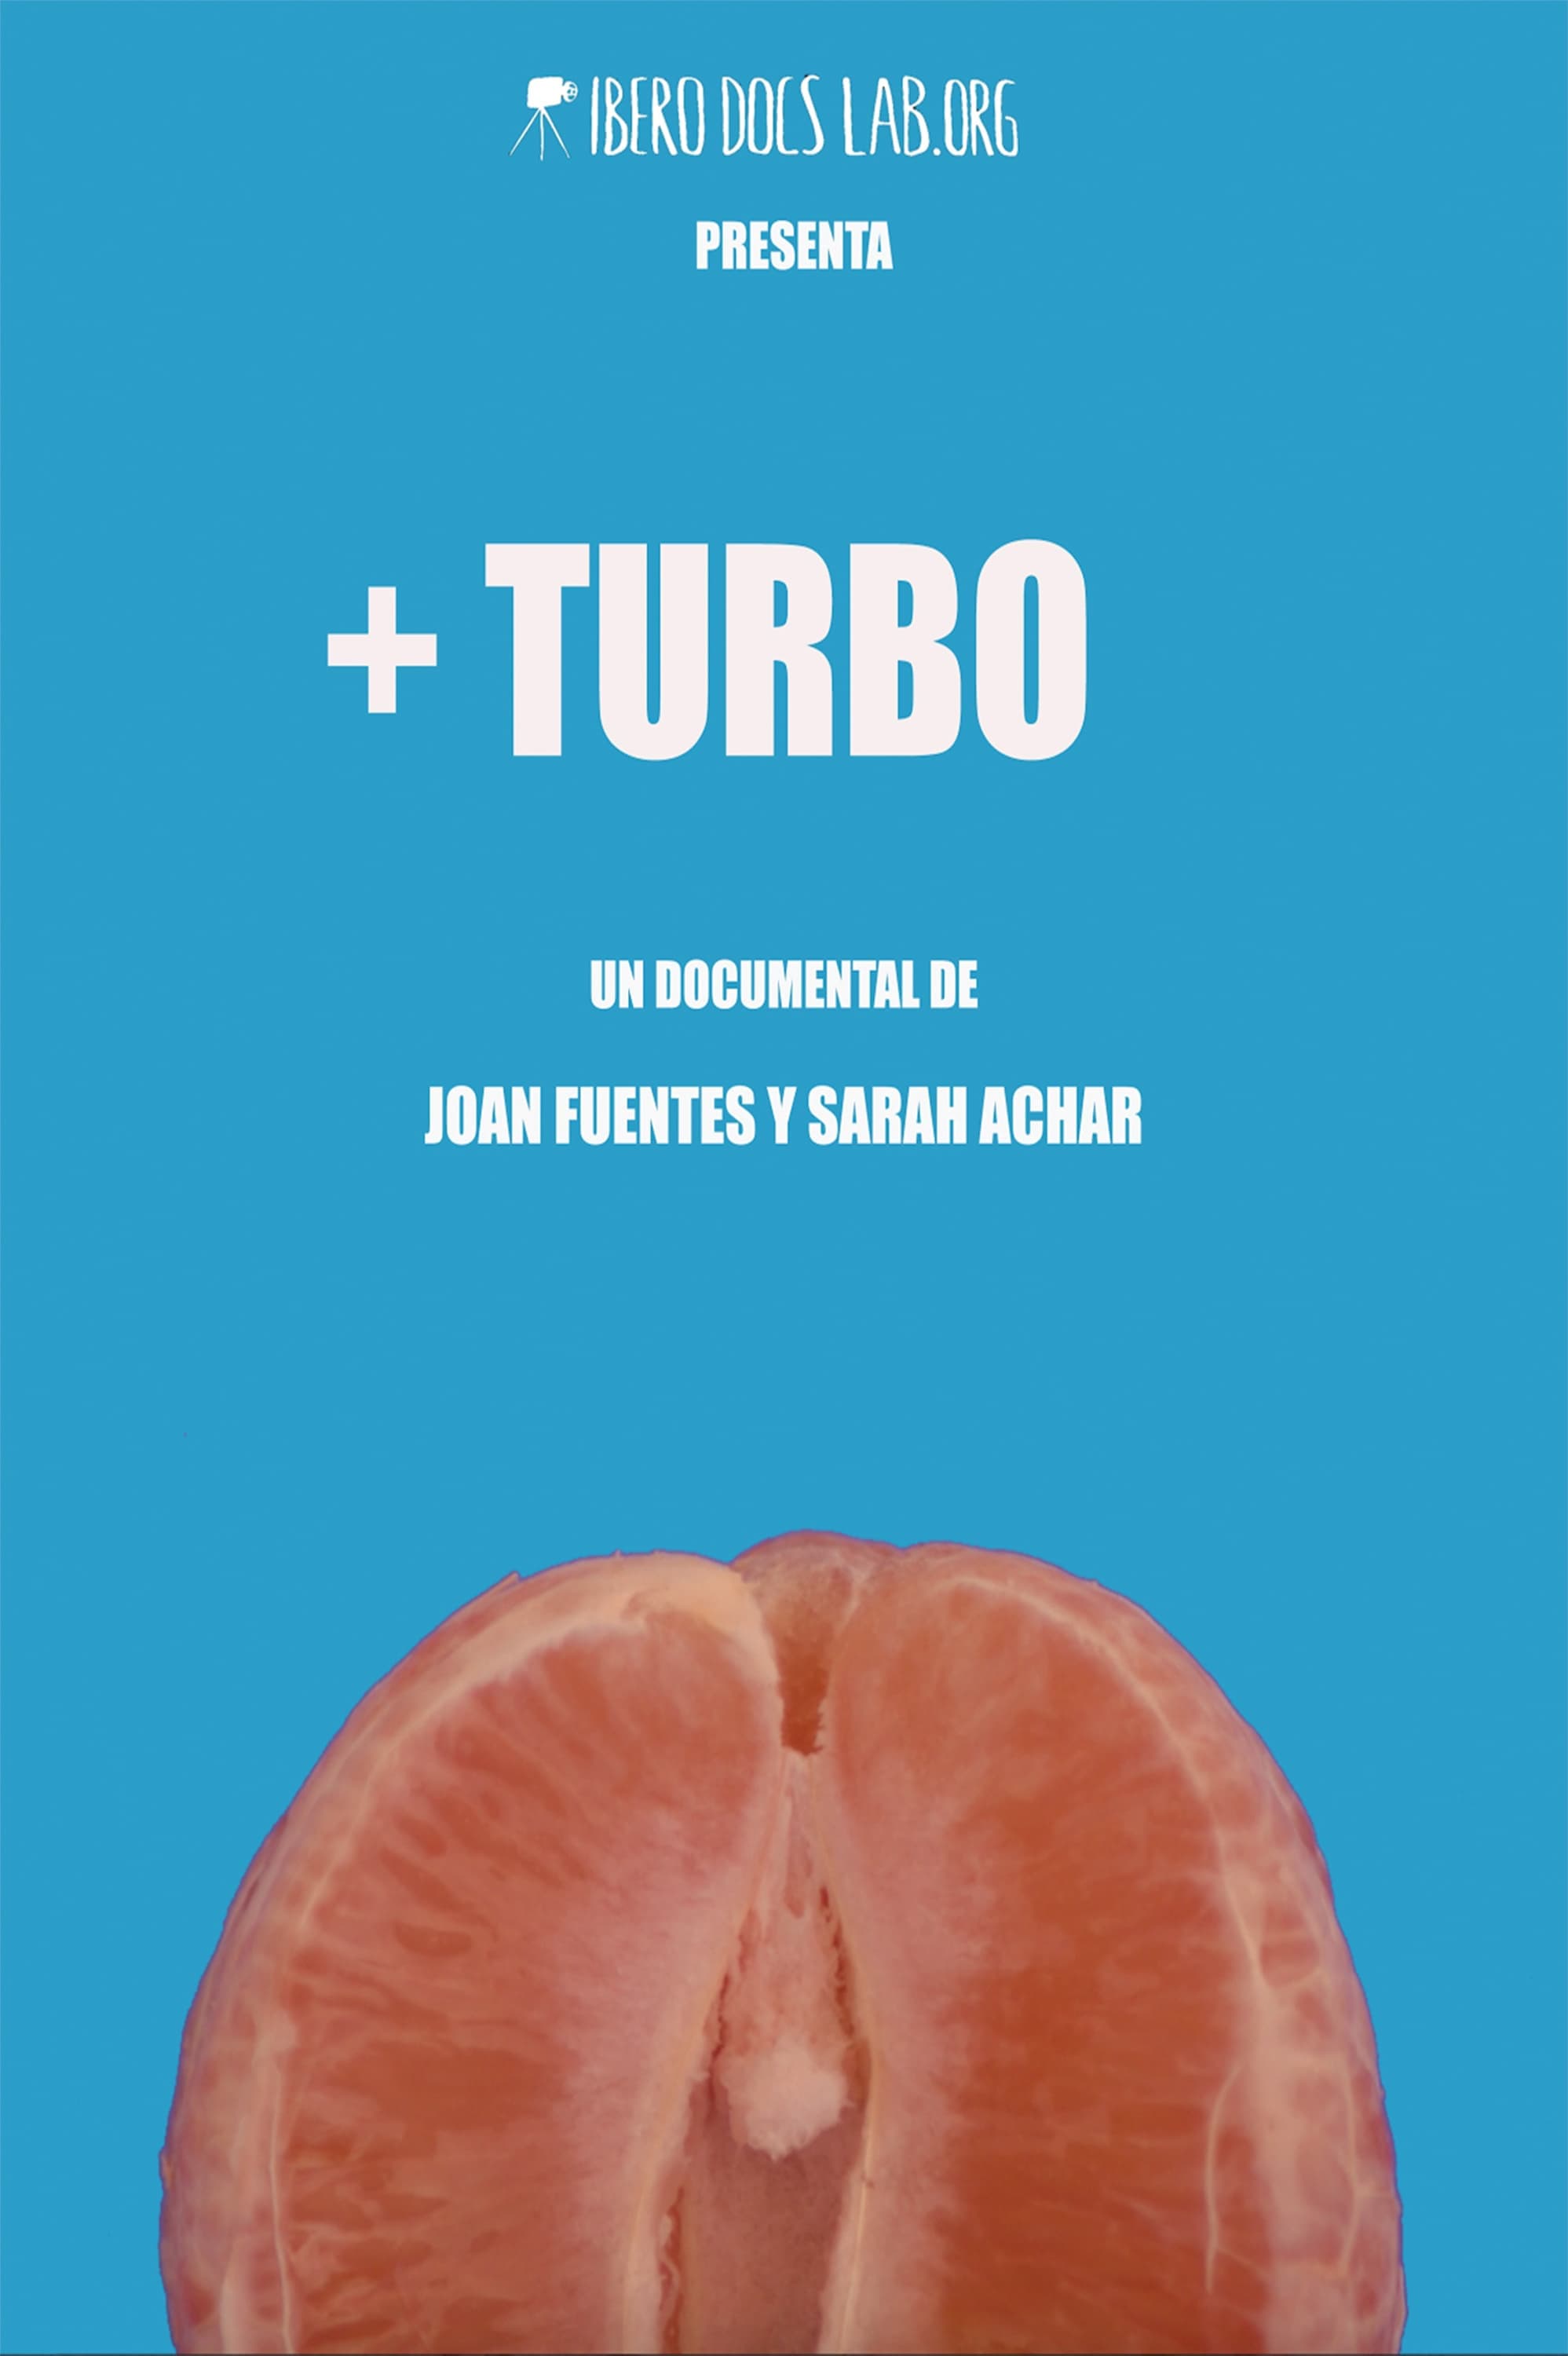 + Turbo